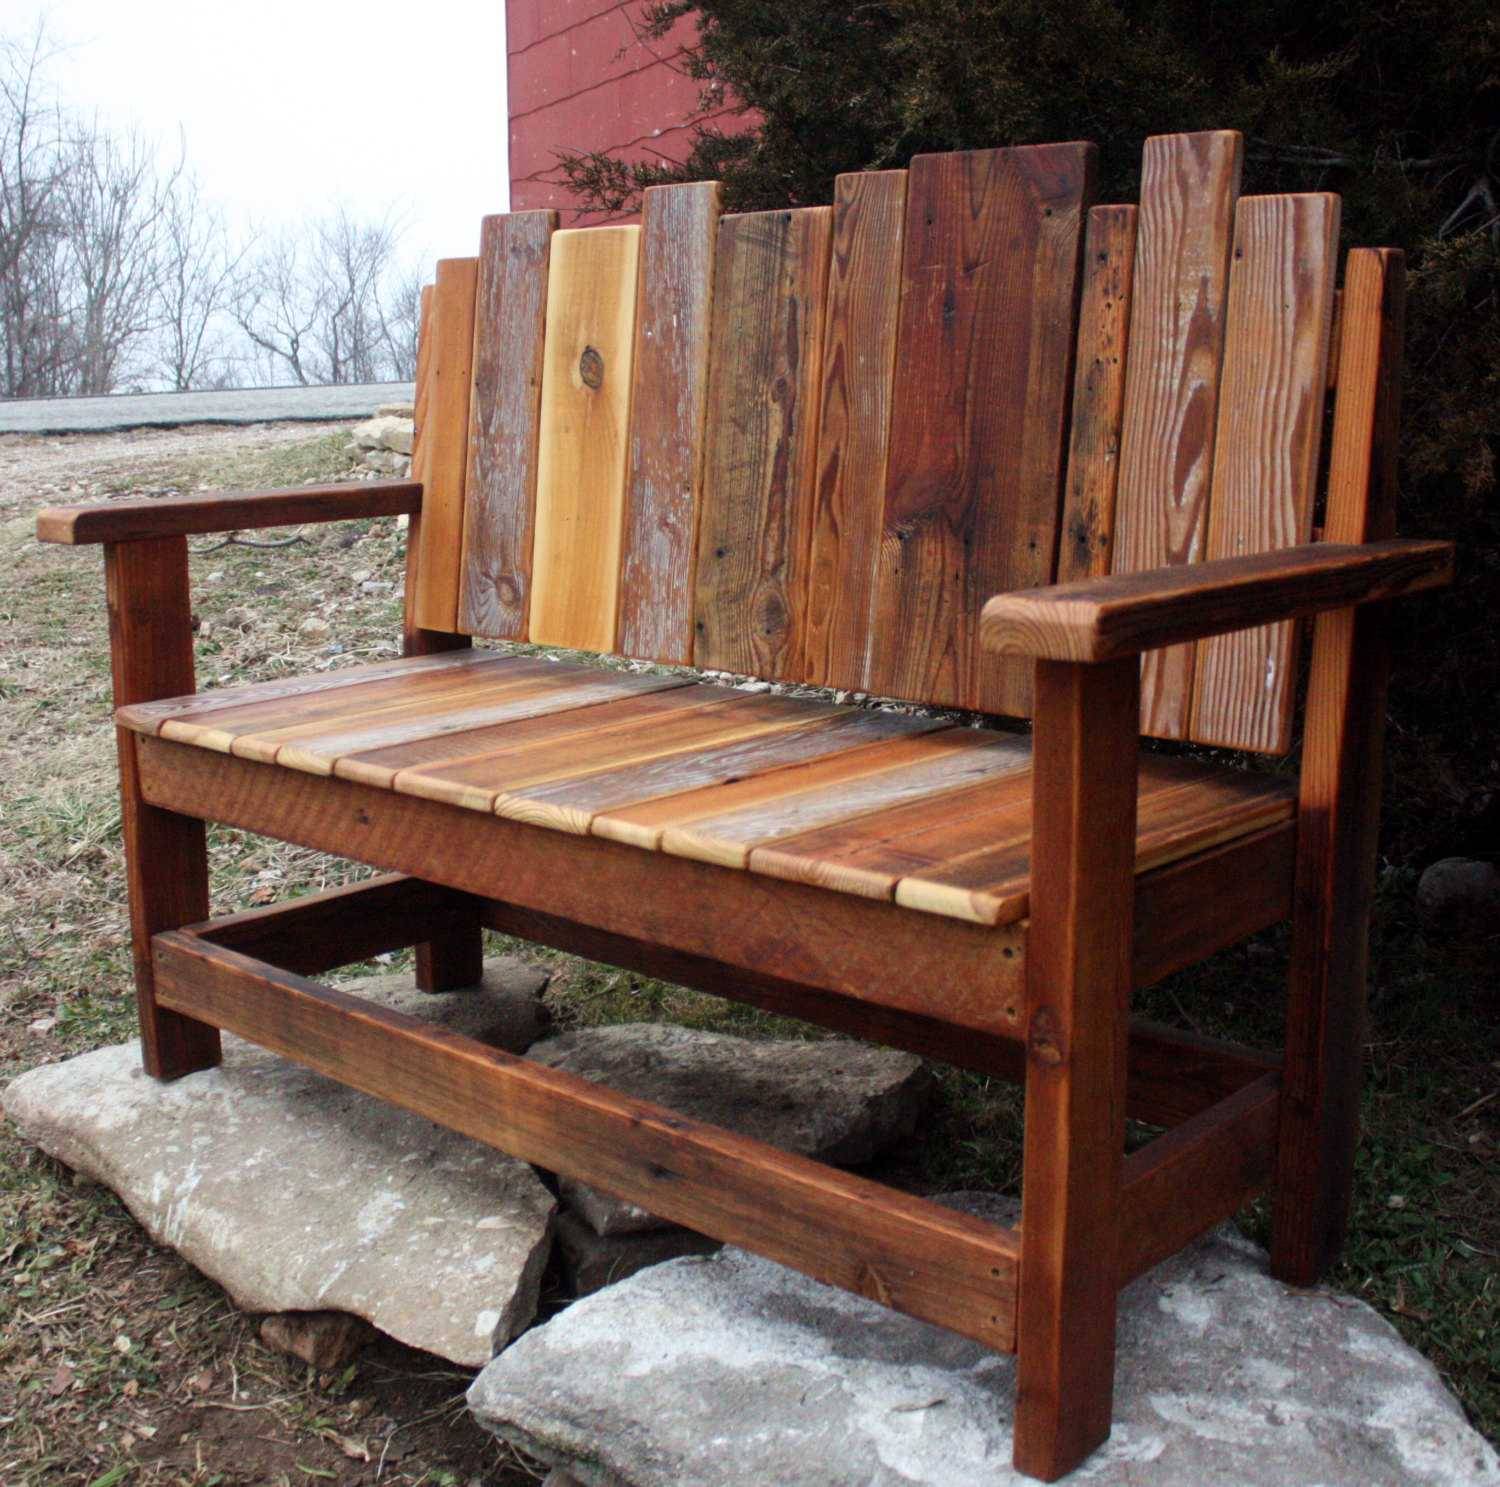 Seater Wooden Bench Outdoor Garden Patio